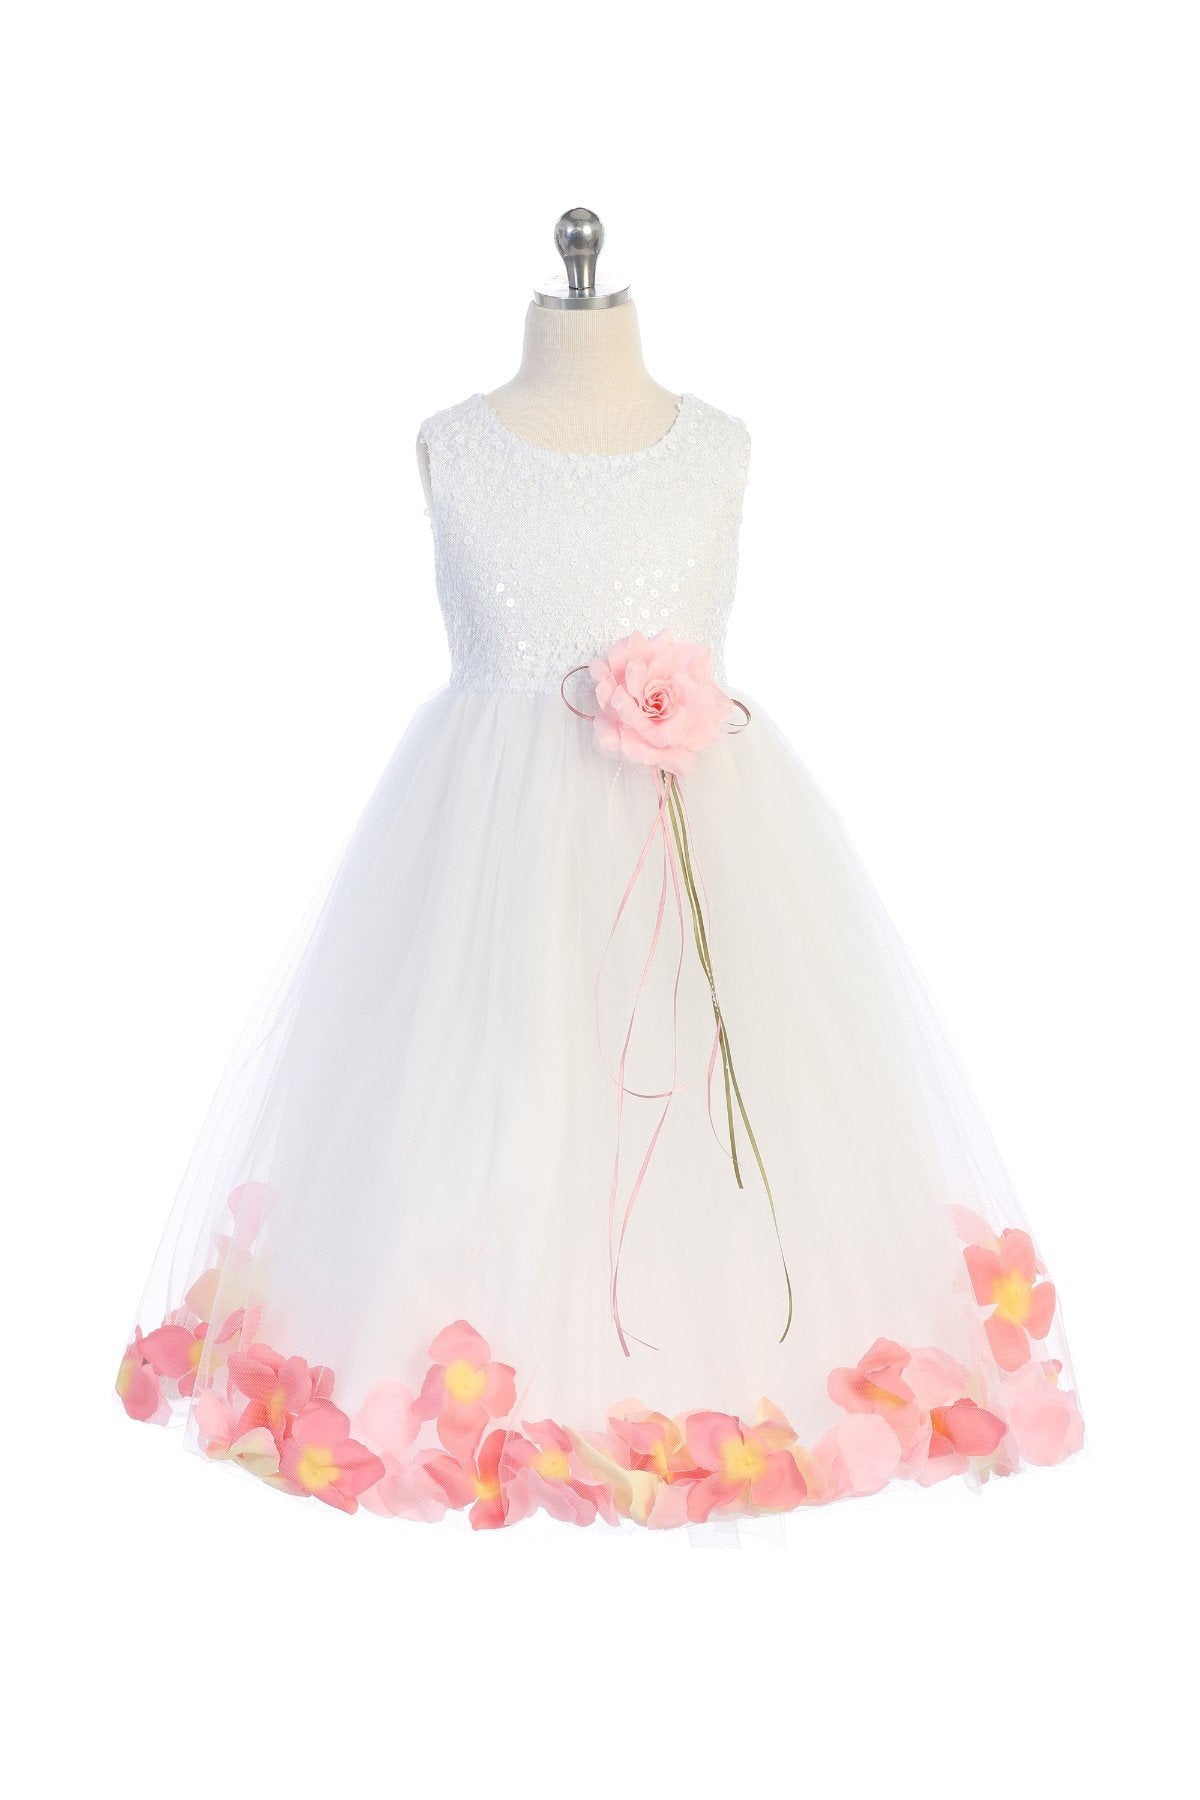 Sequin Top Petal Dress (1 of 2) – Kid's Dream